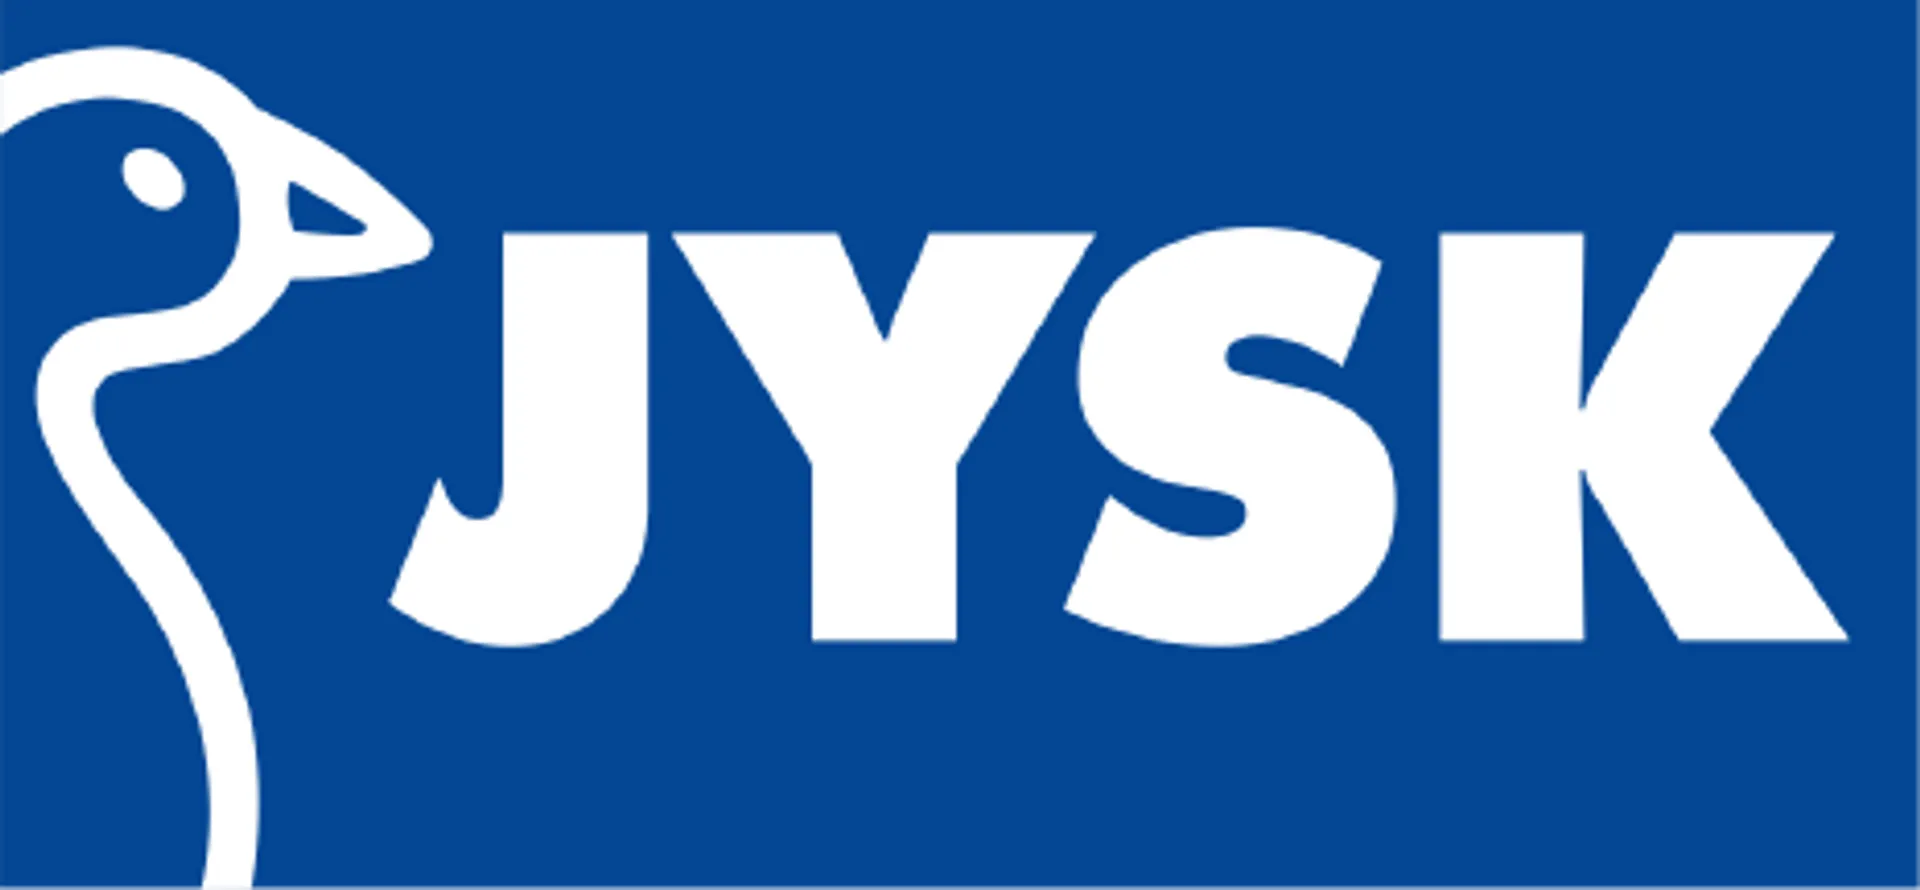 JYSK logo of current flyer